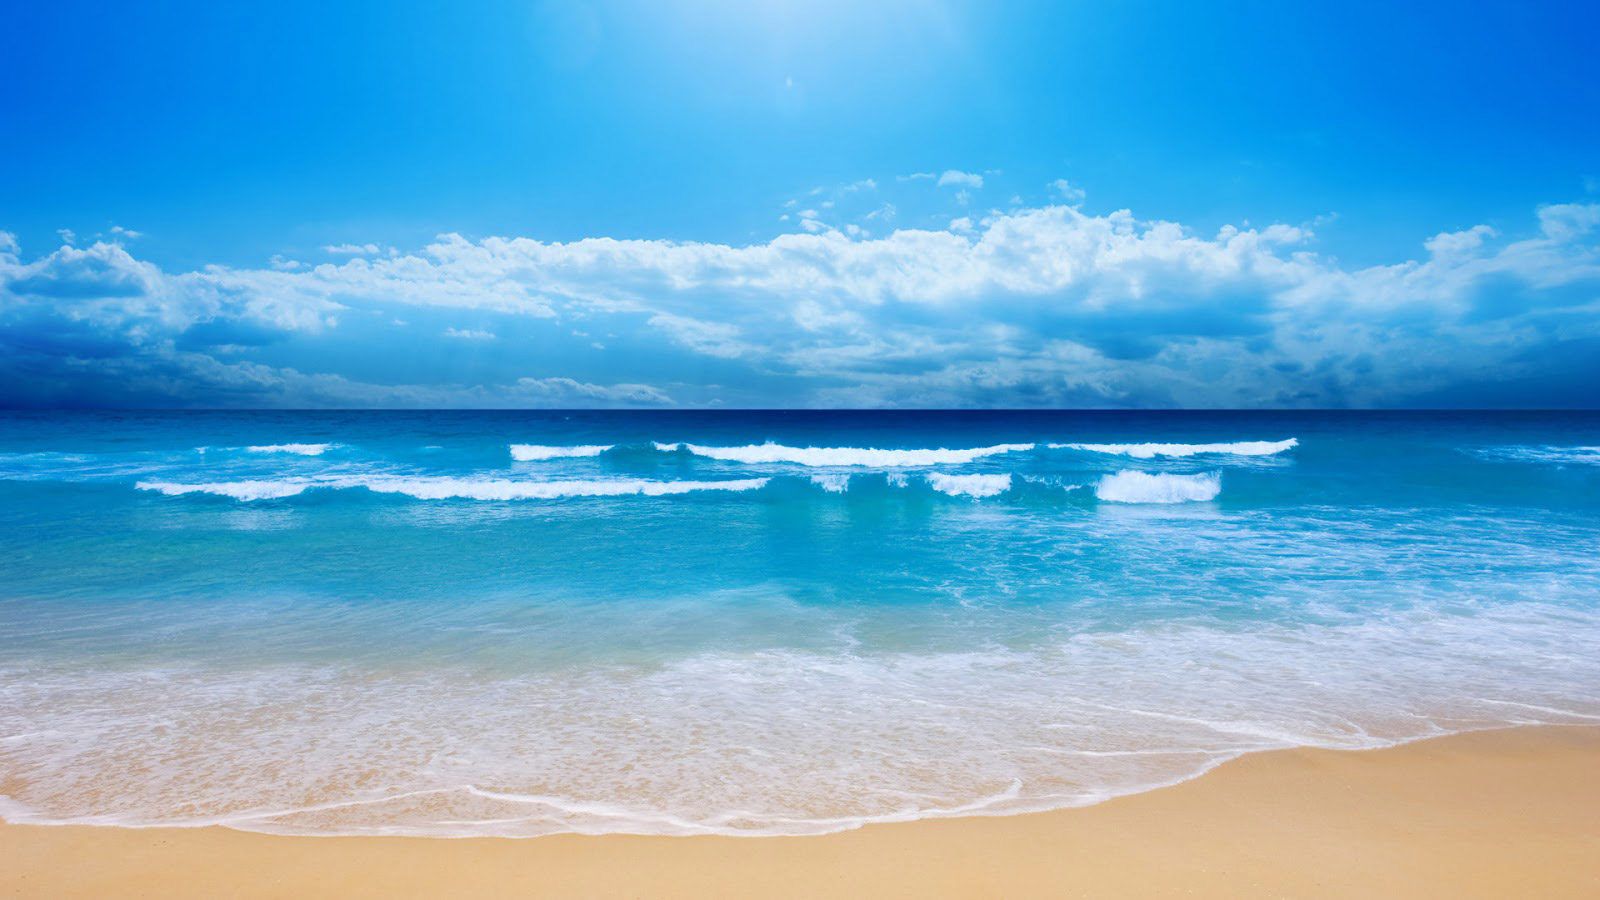 Muốn ngắm nhìn biển xanh trong khi sử dụng máy tính của mình? Chọn các hình nền biển đẹp trên trang web WallpaperDog để trang trí màn hình máy tính của mình. Điều này sẽ giúp bạn cảm thấy thư giãn và đưa bạn vào không gian bên biển với những bức hình đẹp mắt.